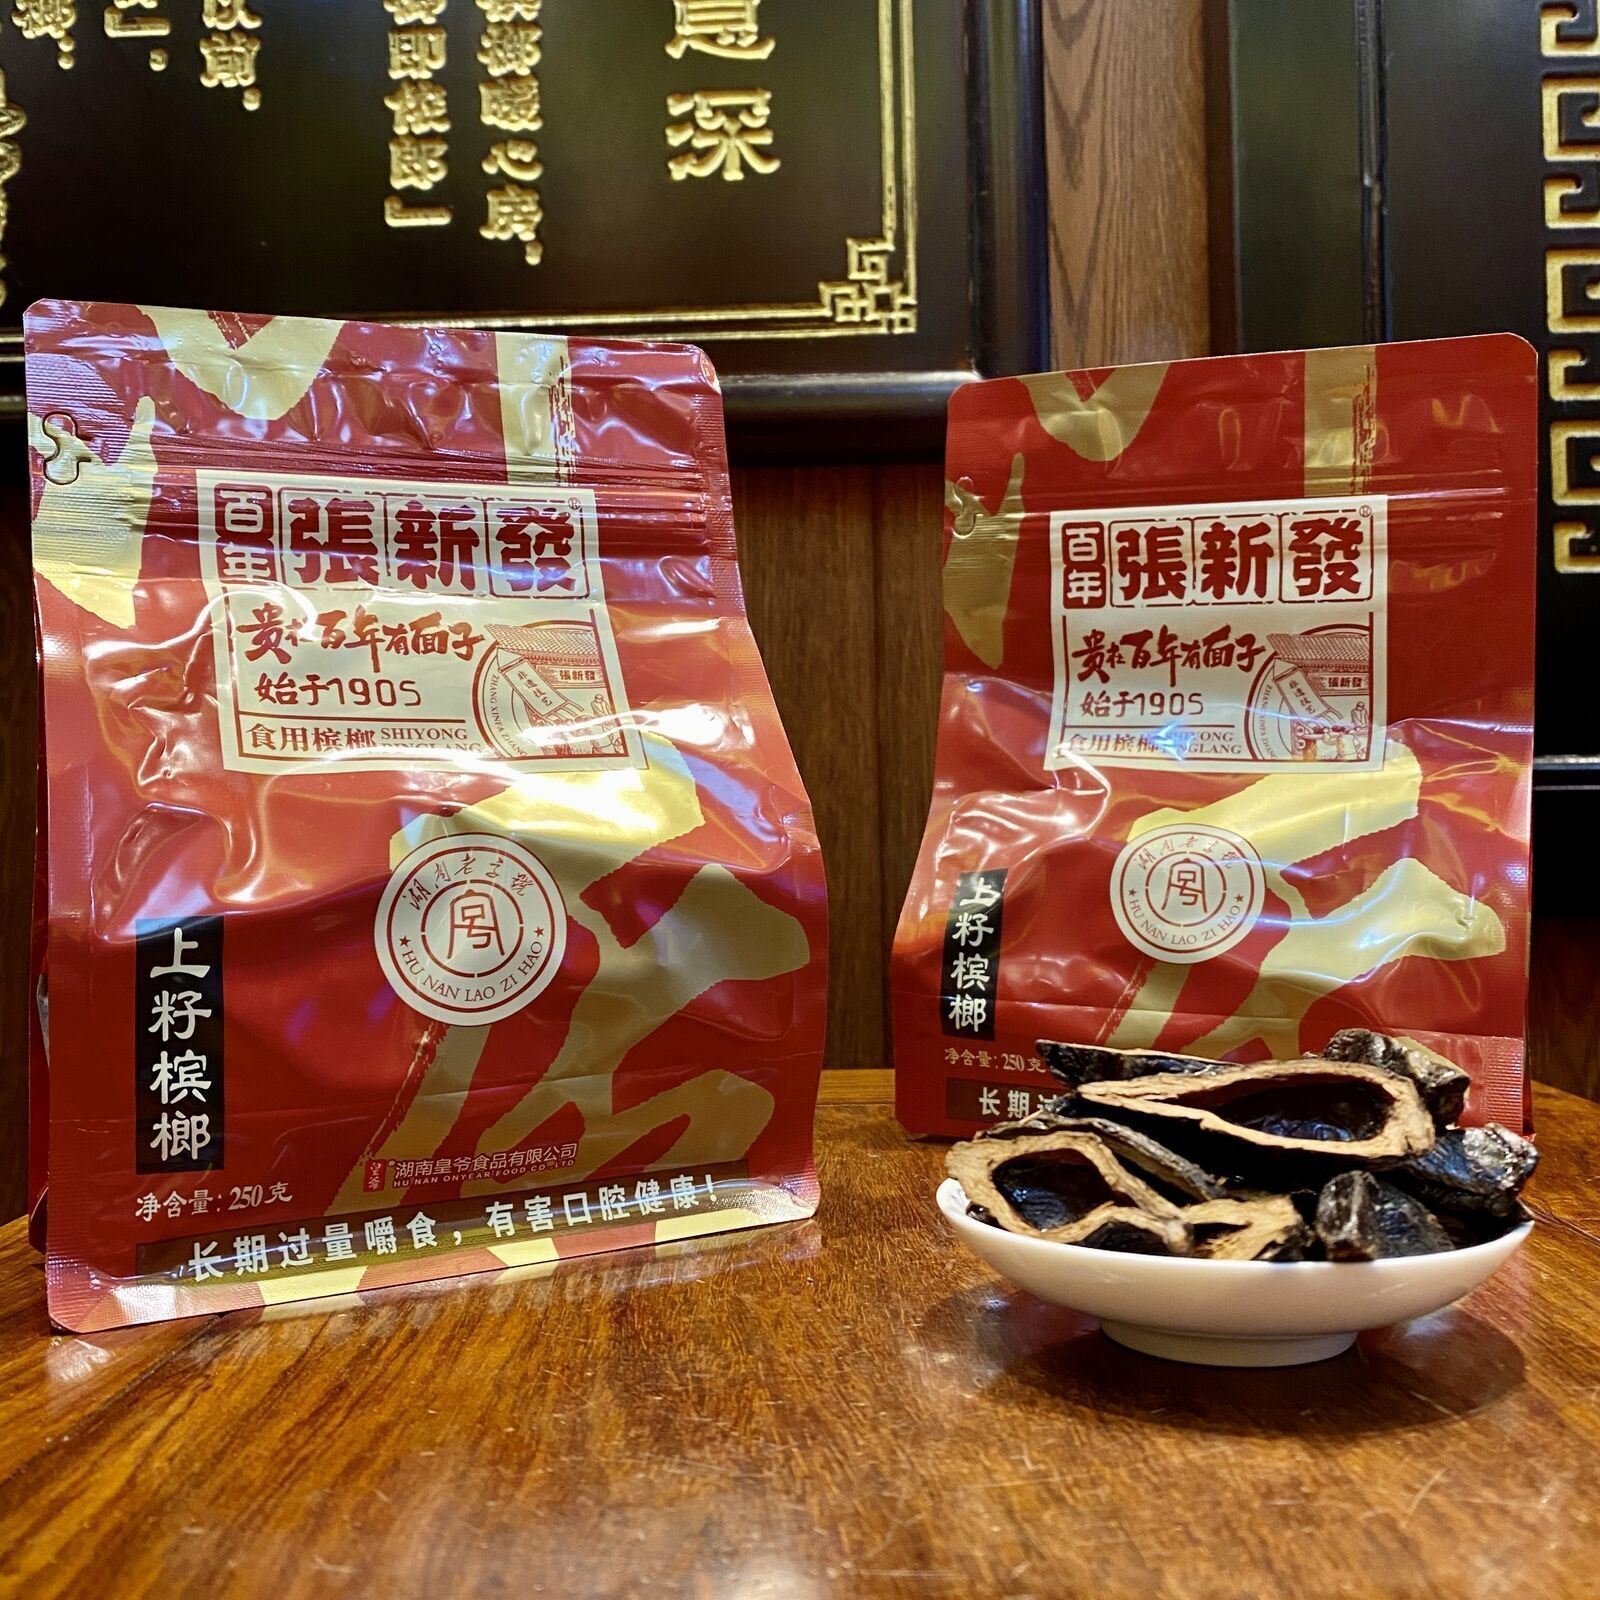 【张新发 槟榔上籽 250g】中国湖南湘潭特产 Betel nut Chinese snack  250g